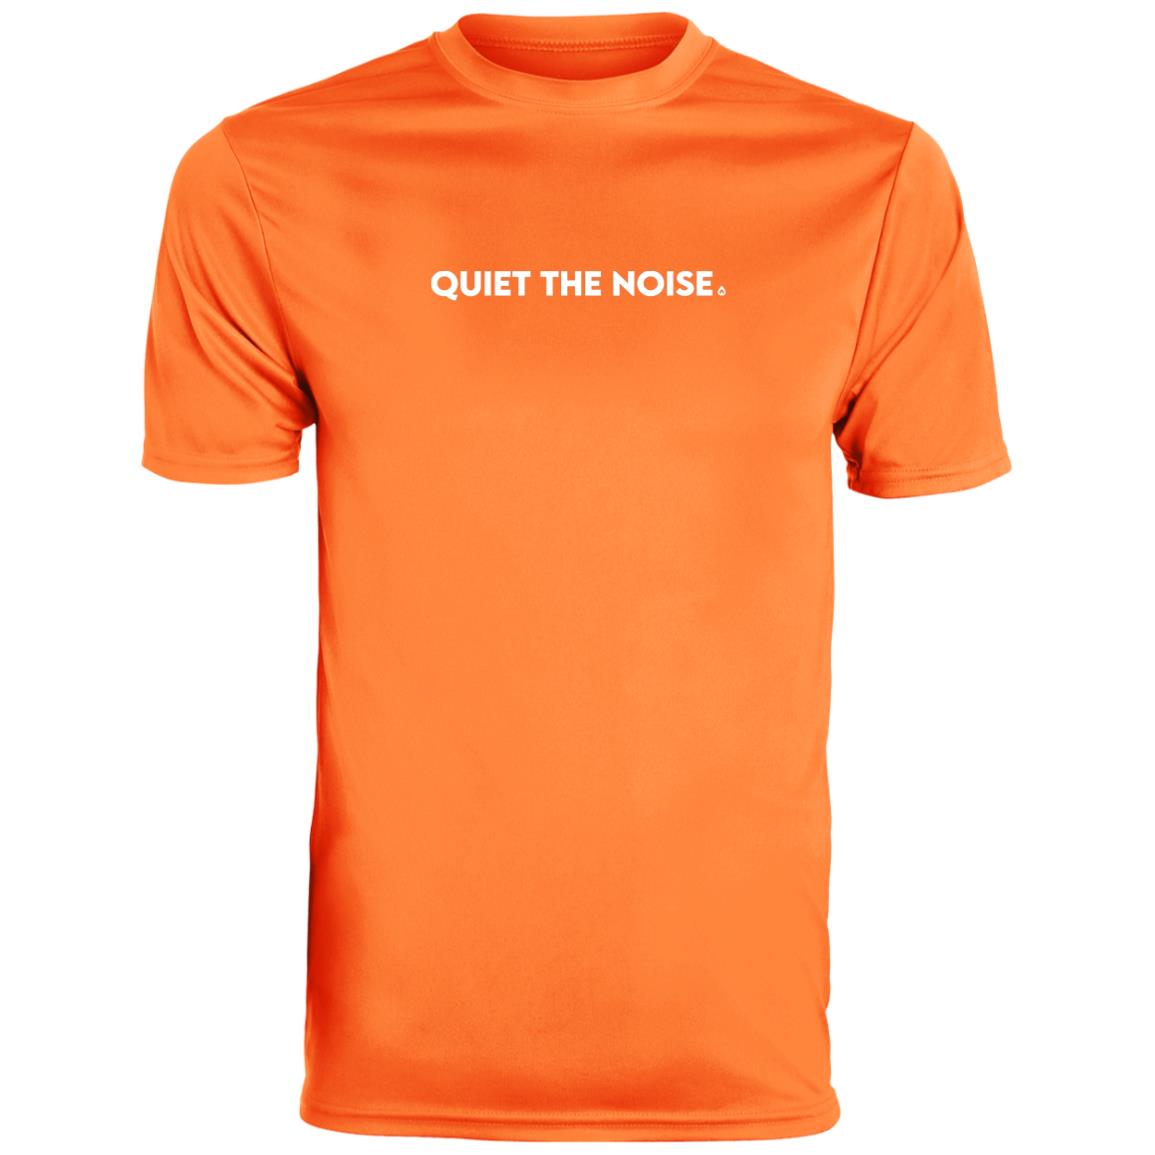 Quiet The Noise Women's Performance T-Shirt